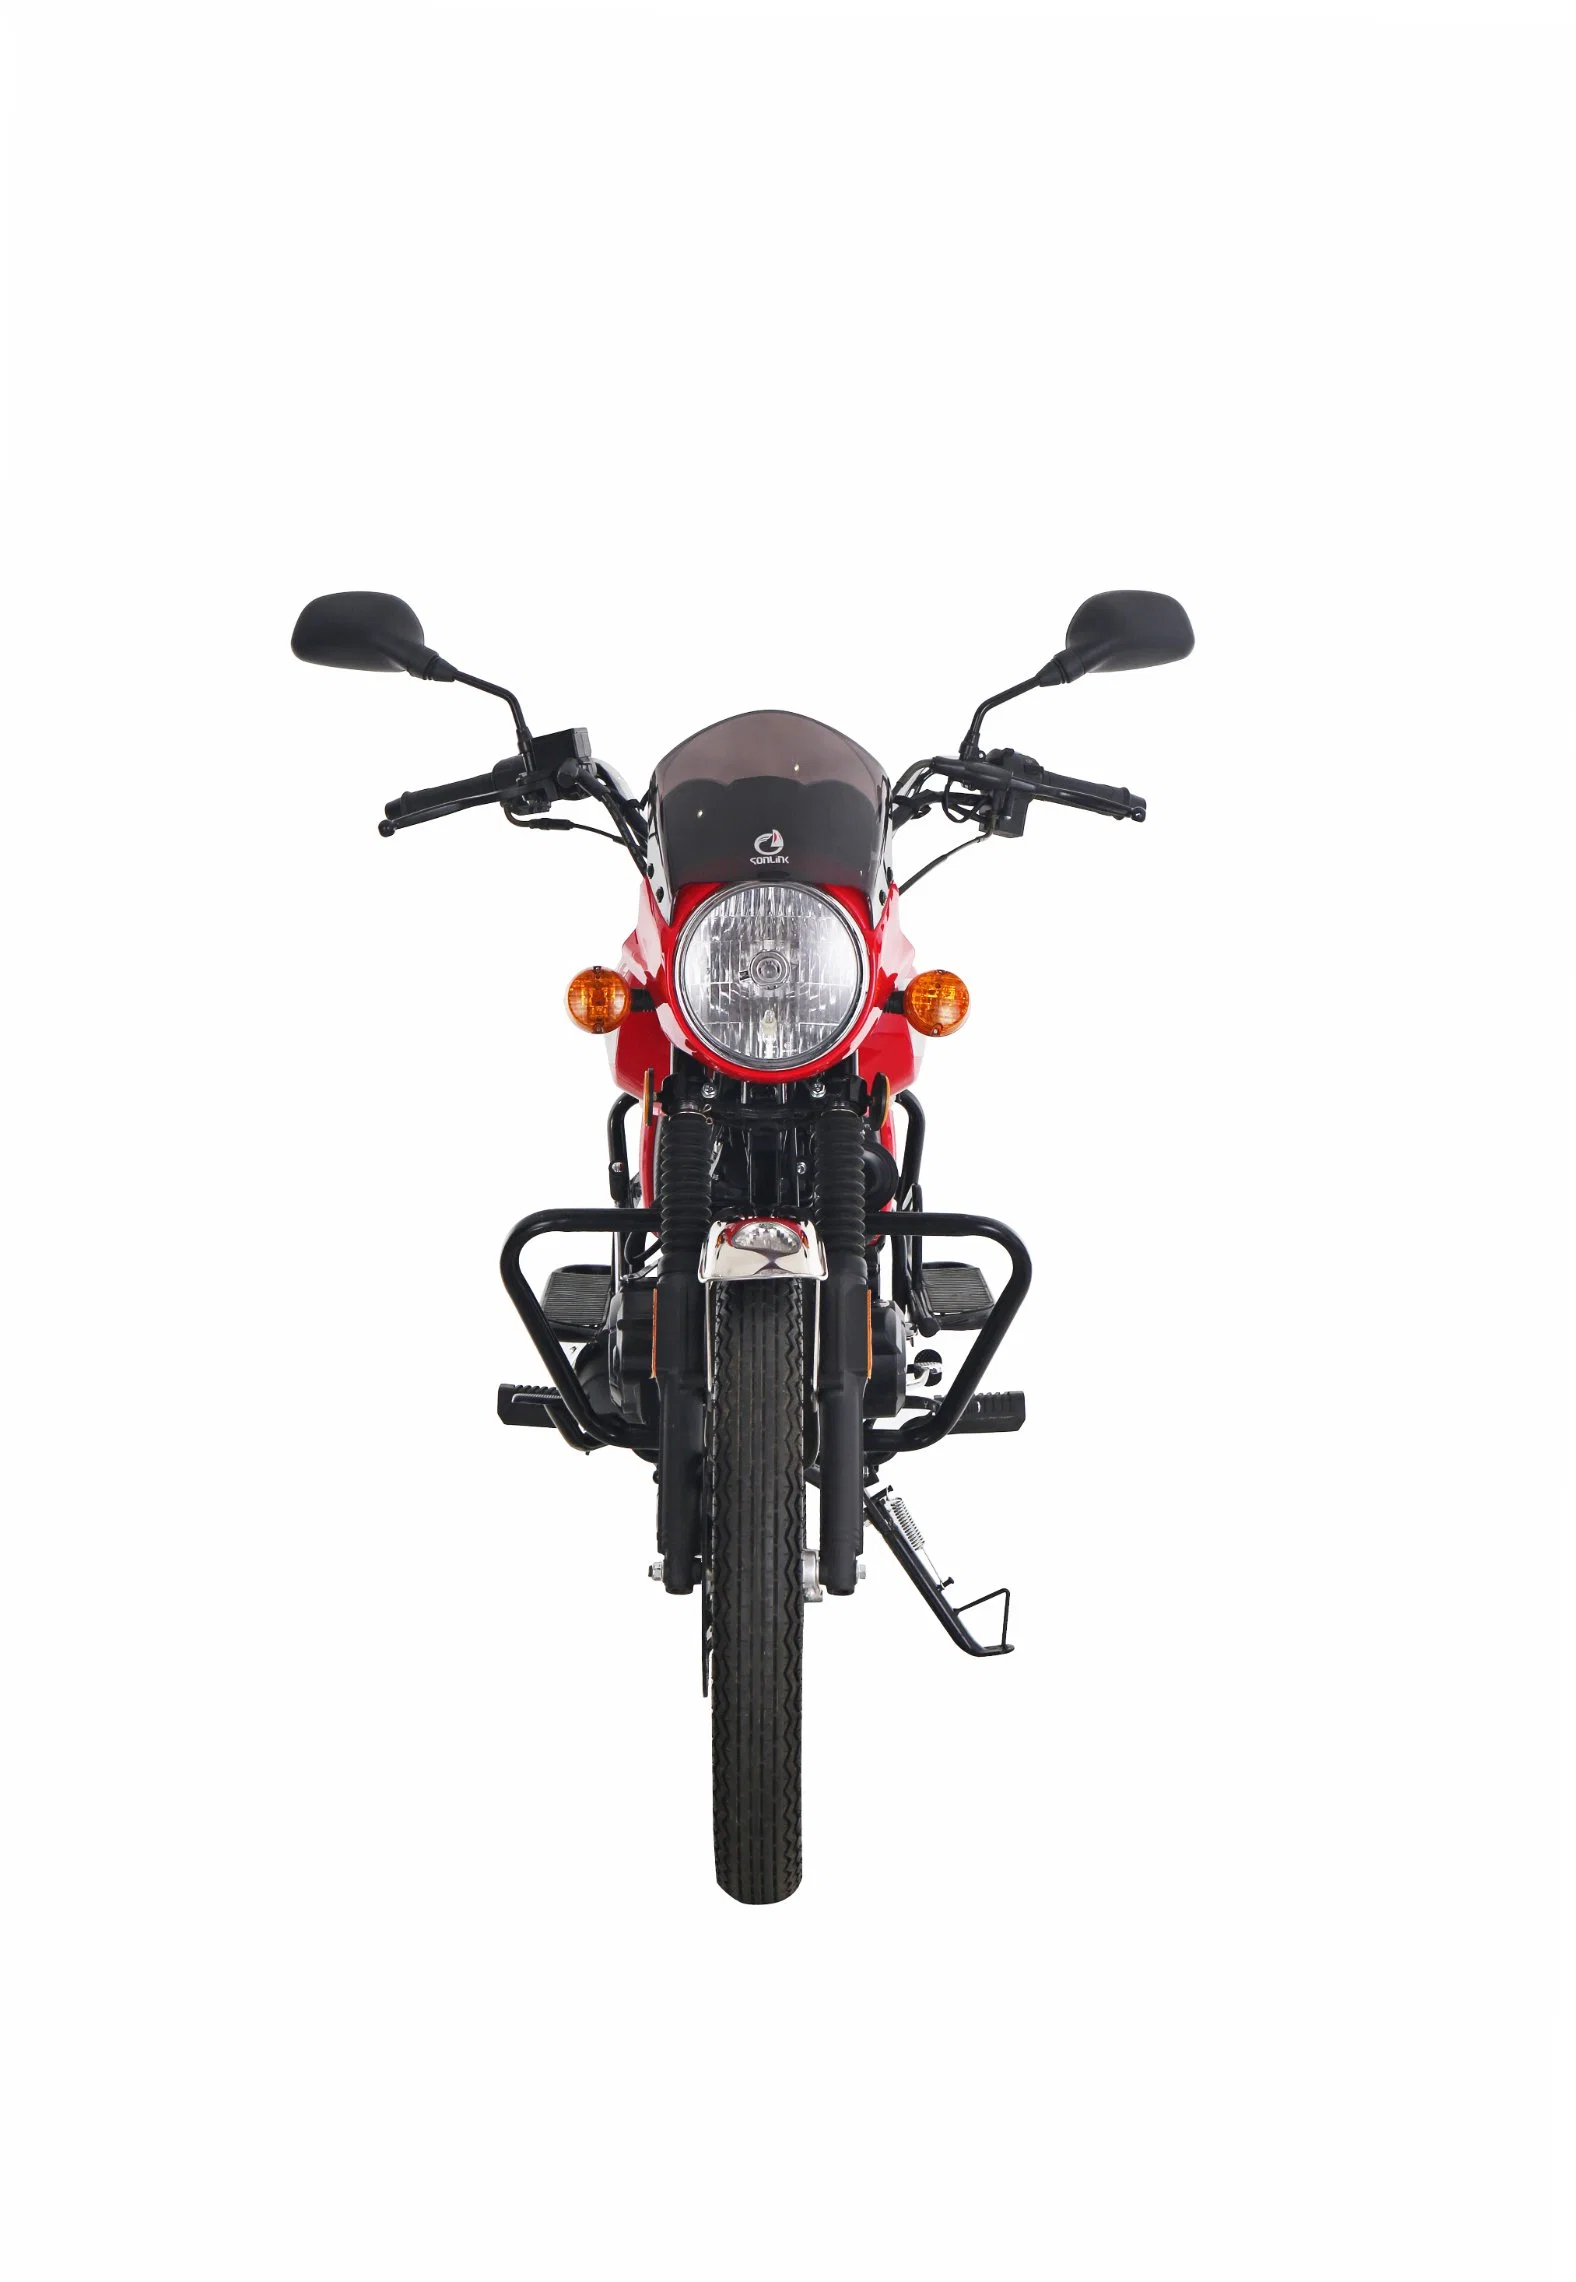 Loisir Moto 150cc Motorrad / 200cc Motorrad / 150cc Schmutz Fahrrad / Elektro-Fahrrad